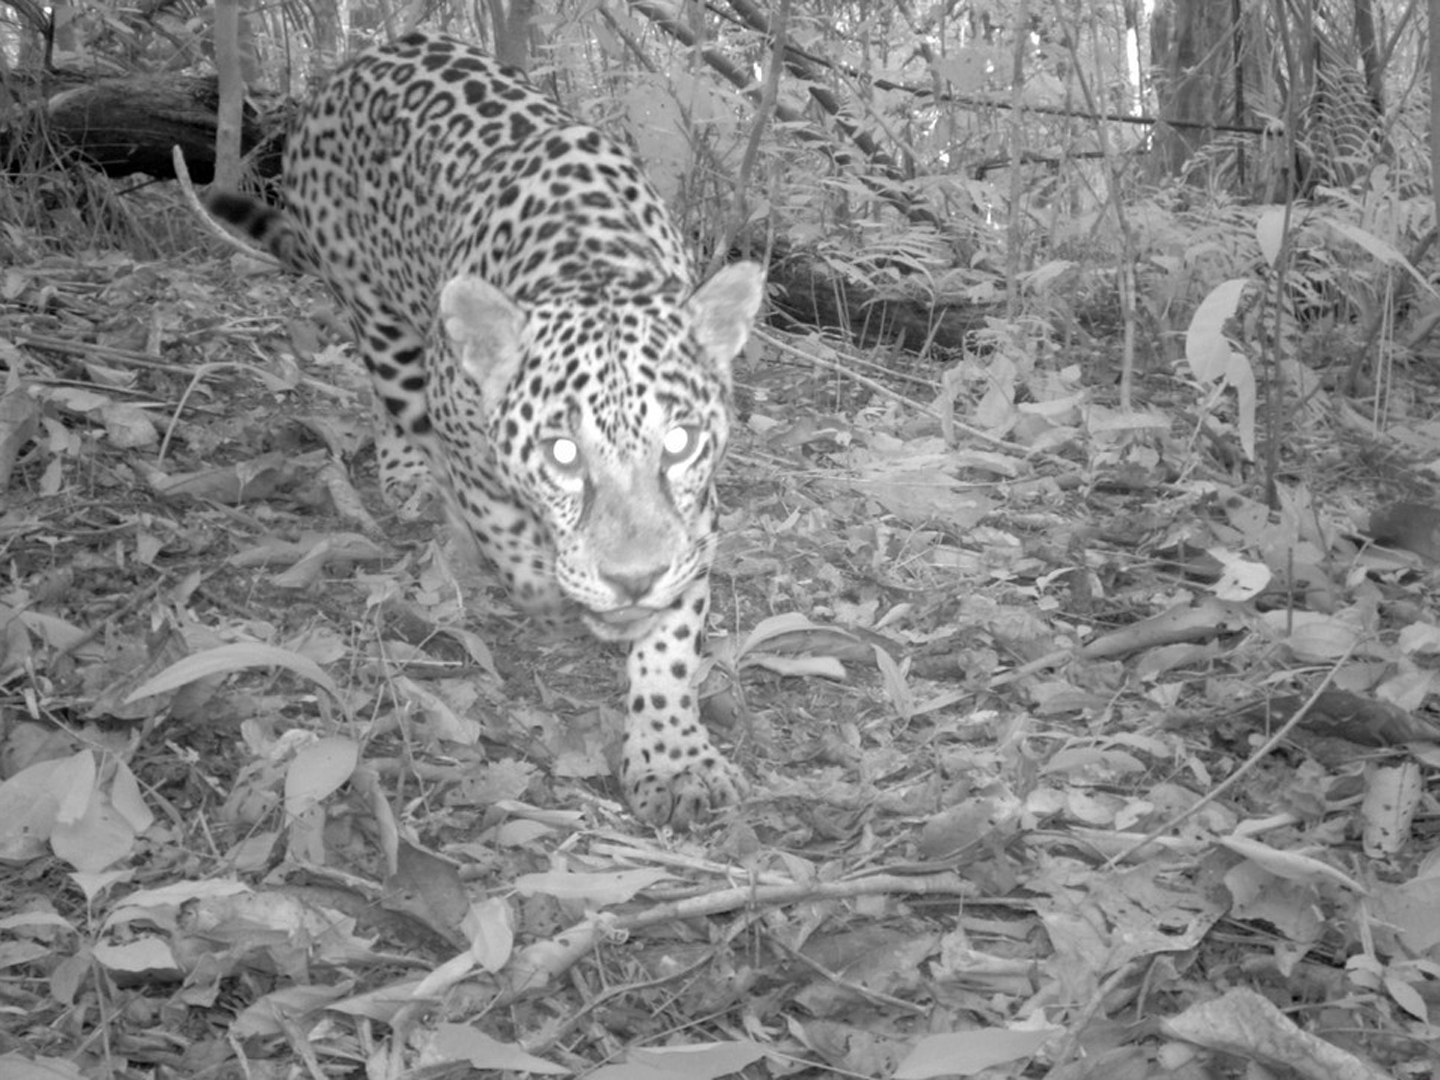 Panthera onca: JaguarCocha Cashu, Manu National Park, Peru